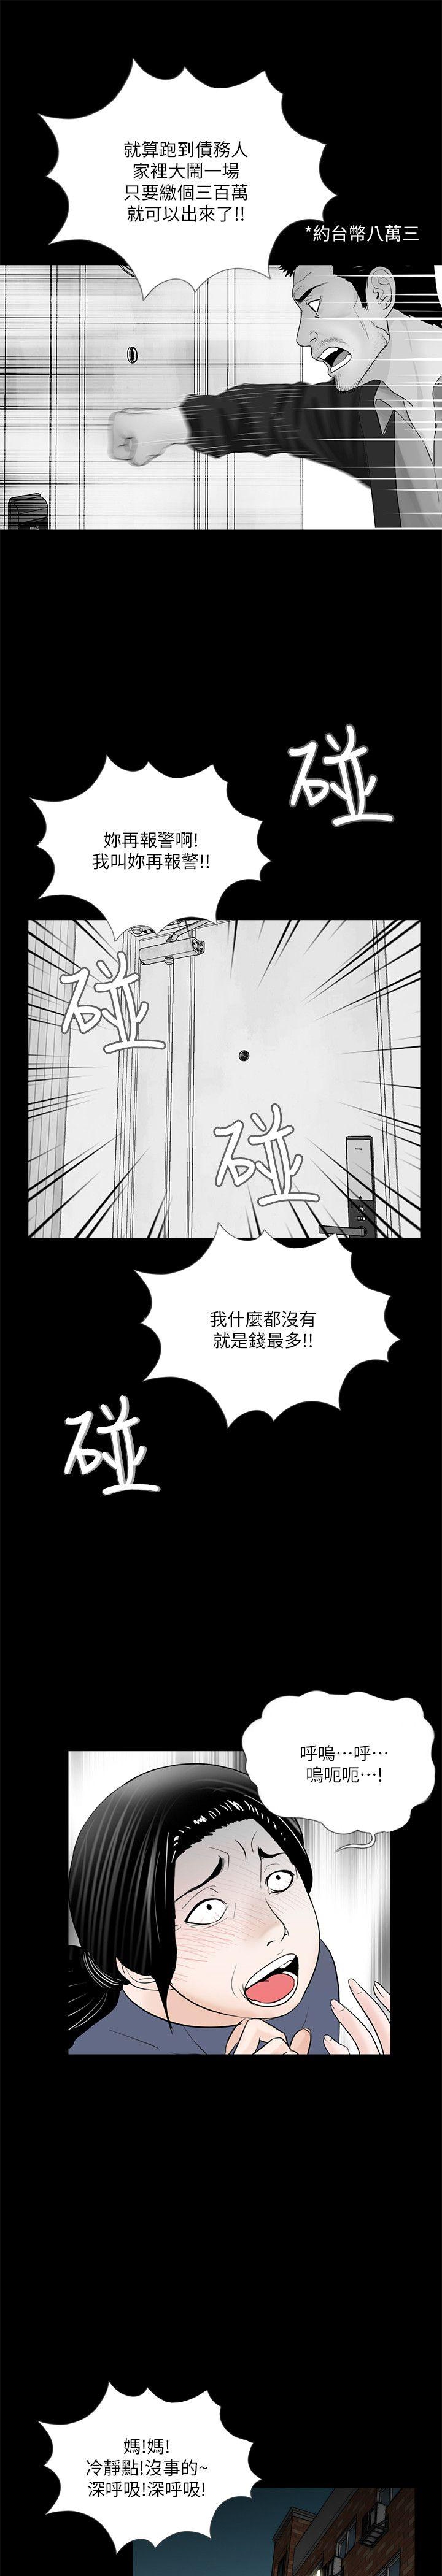 韩国污漫画 夢魘 第50话-真书的梦魇[02 1